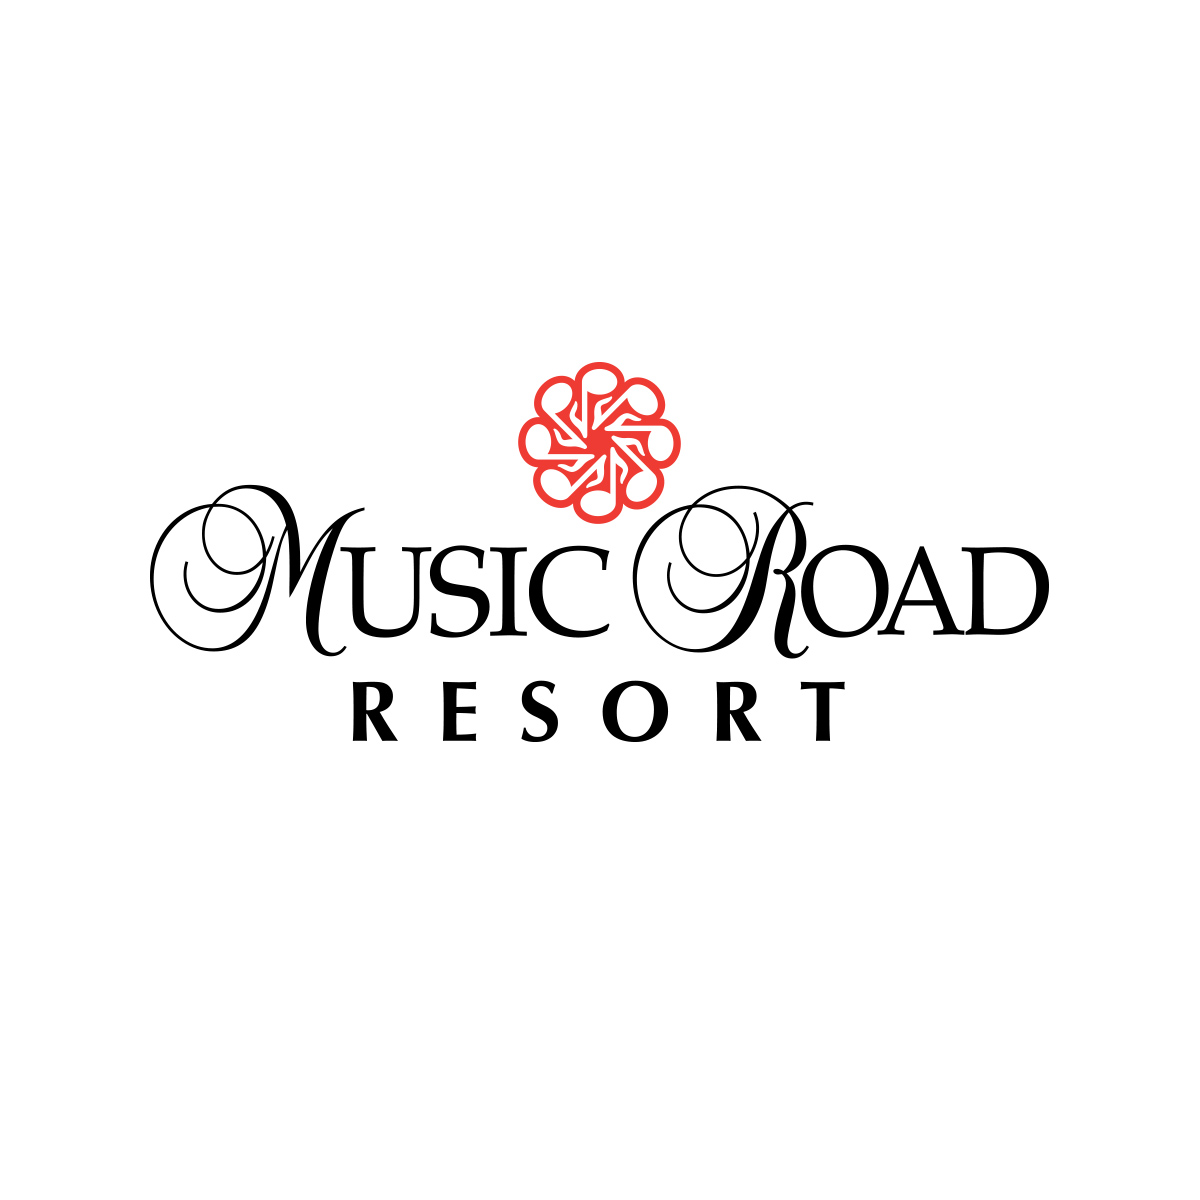 Music Road Resort 2019 SMCB Logo.jpg